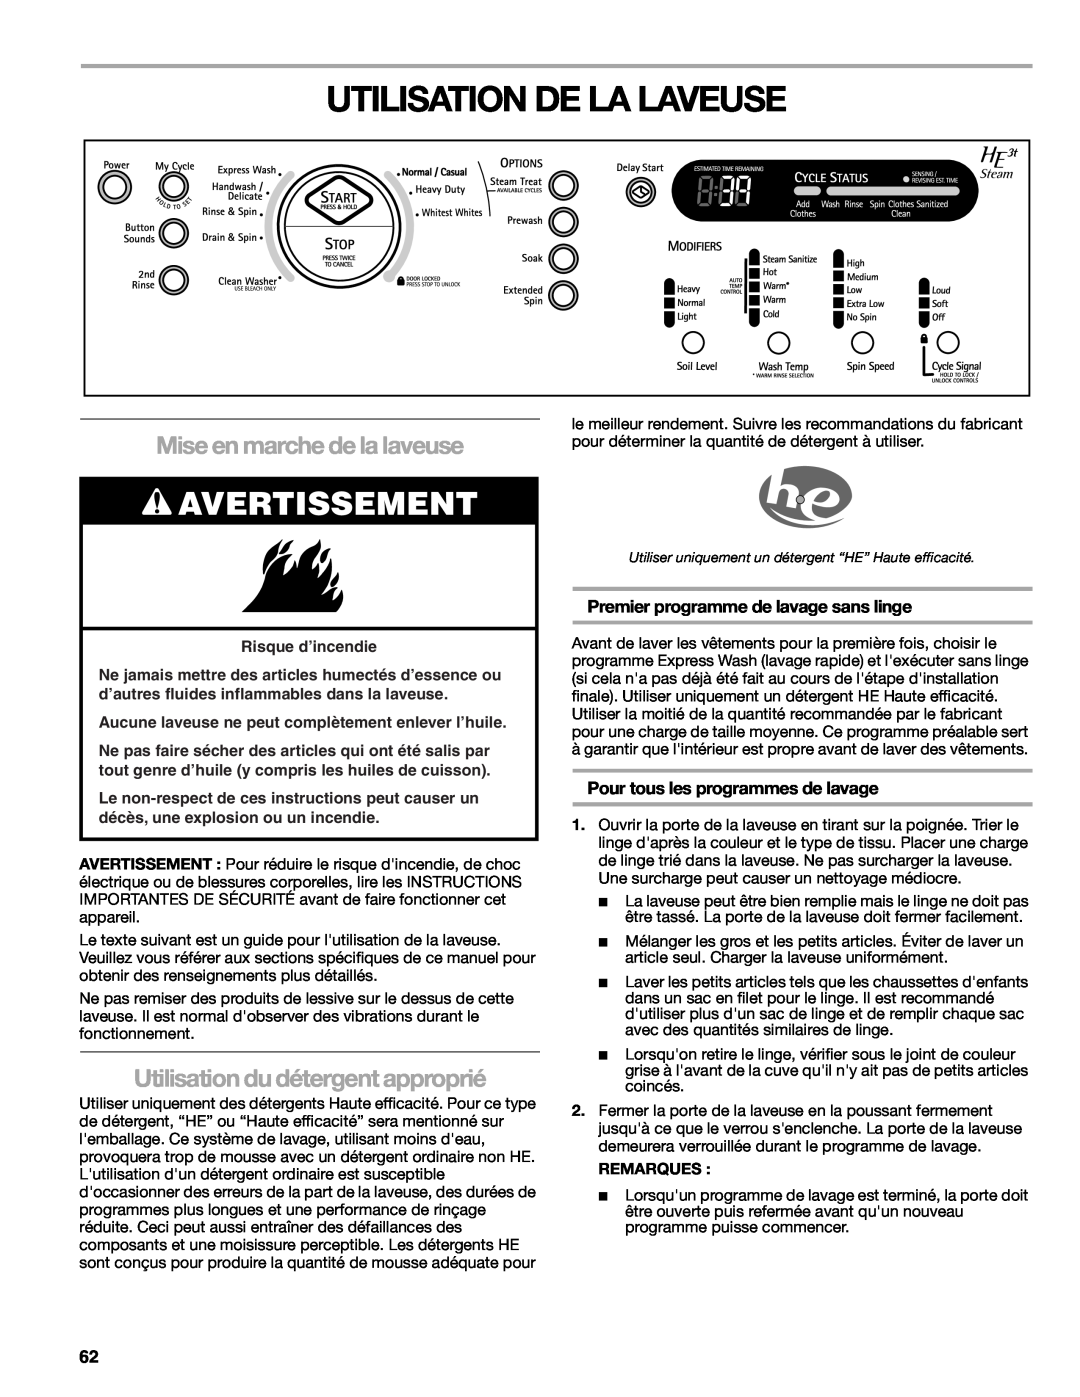 Kenmore W10133487A manual Utilisation De La Laveuse, Mise en marche de la laveuse, Utilisation du détergent approprié 